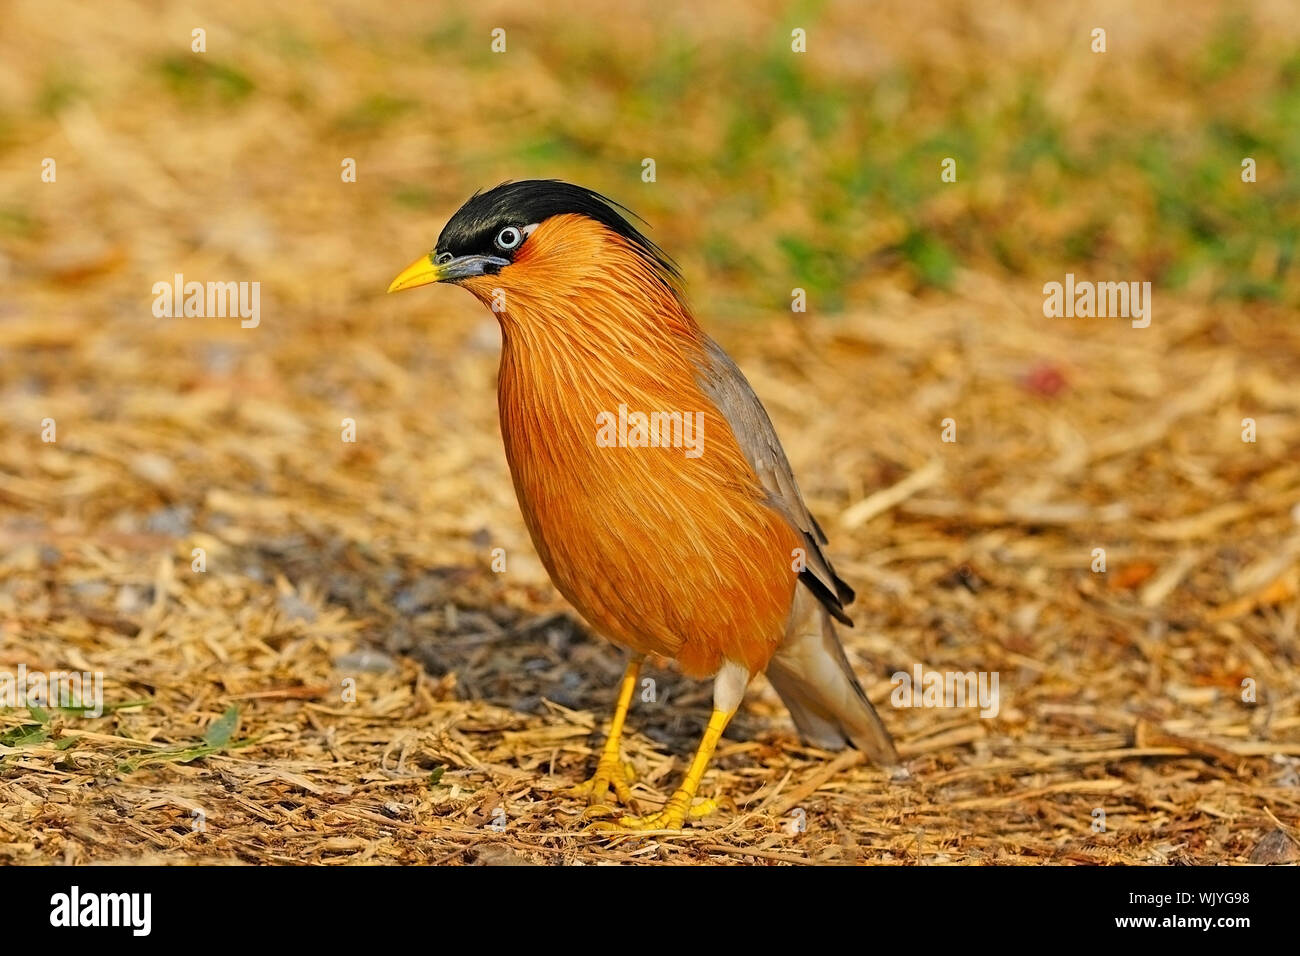 Beautiful Starling, Brahminy Starling (Sturnus pagodarum) Stock Photo